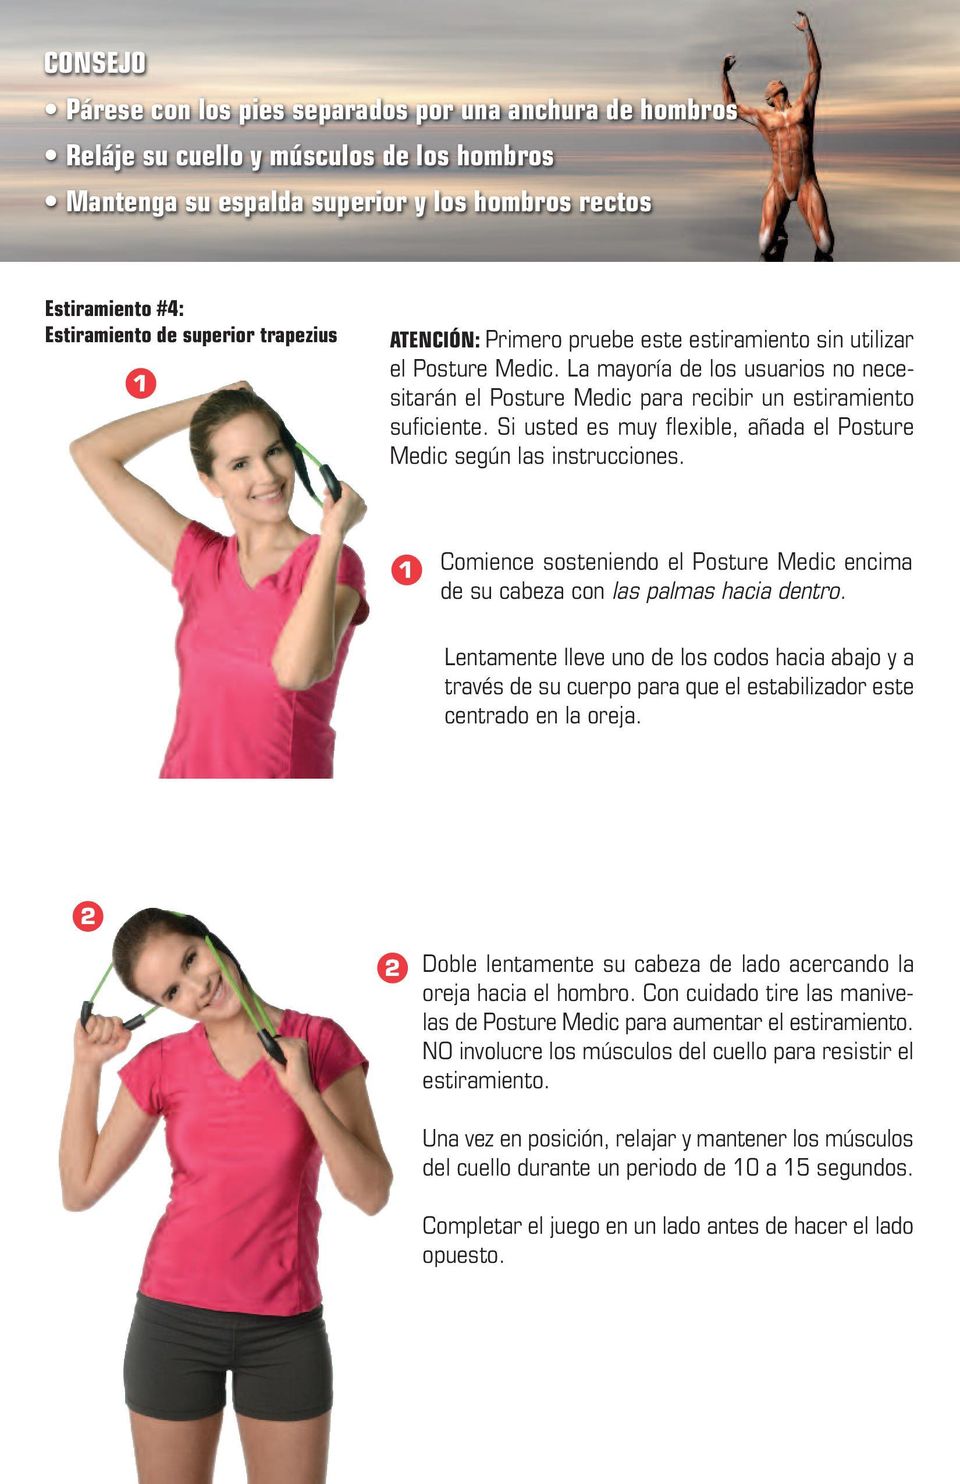 Si usted es muy flexible, añada el Posture Medic según las instrucciones. Comience sosteniendo el Posture Medic encima de su cabeza con las palmas hacia dentro.